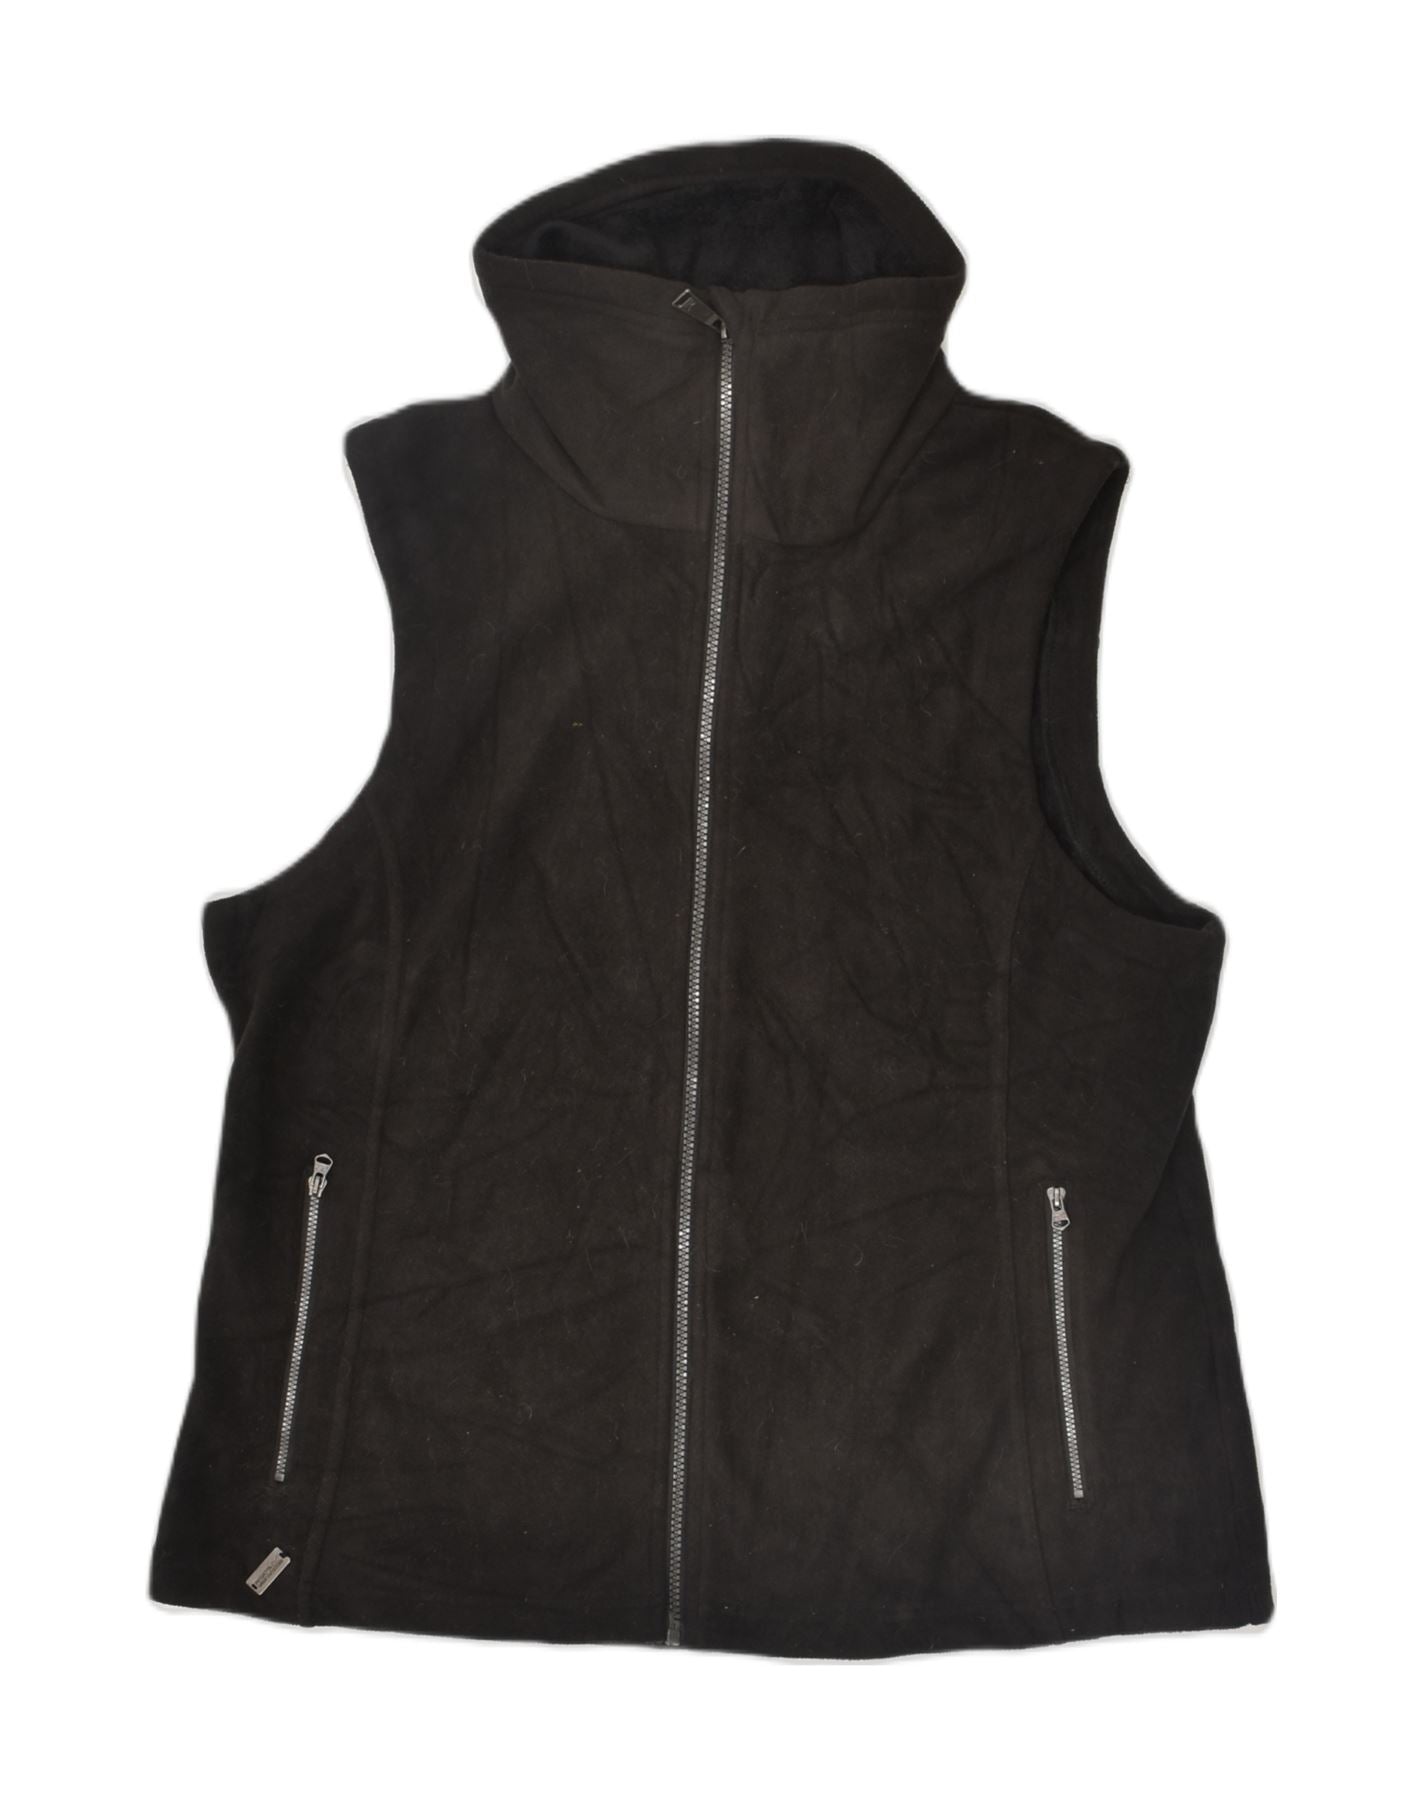 FILA Womens Padded Jacket UK 16 Large Black Nylon